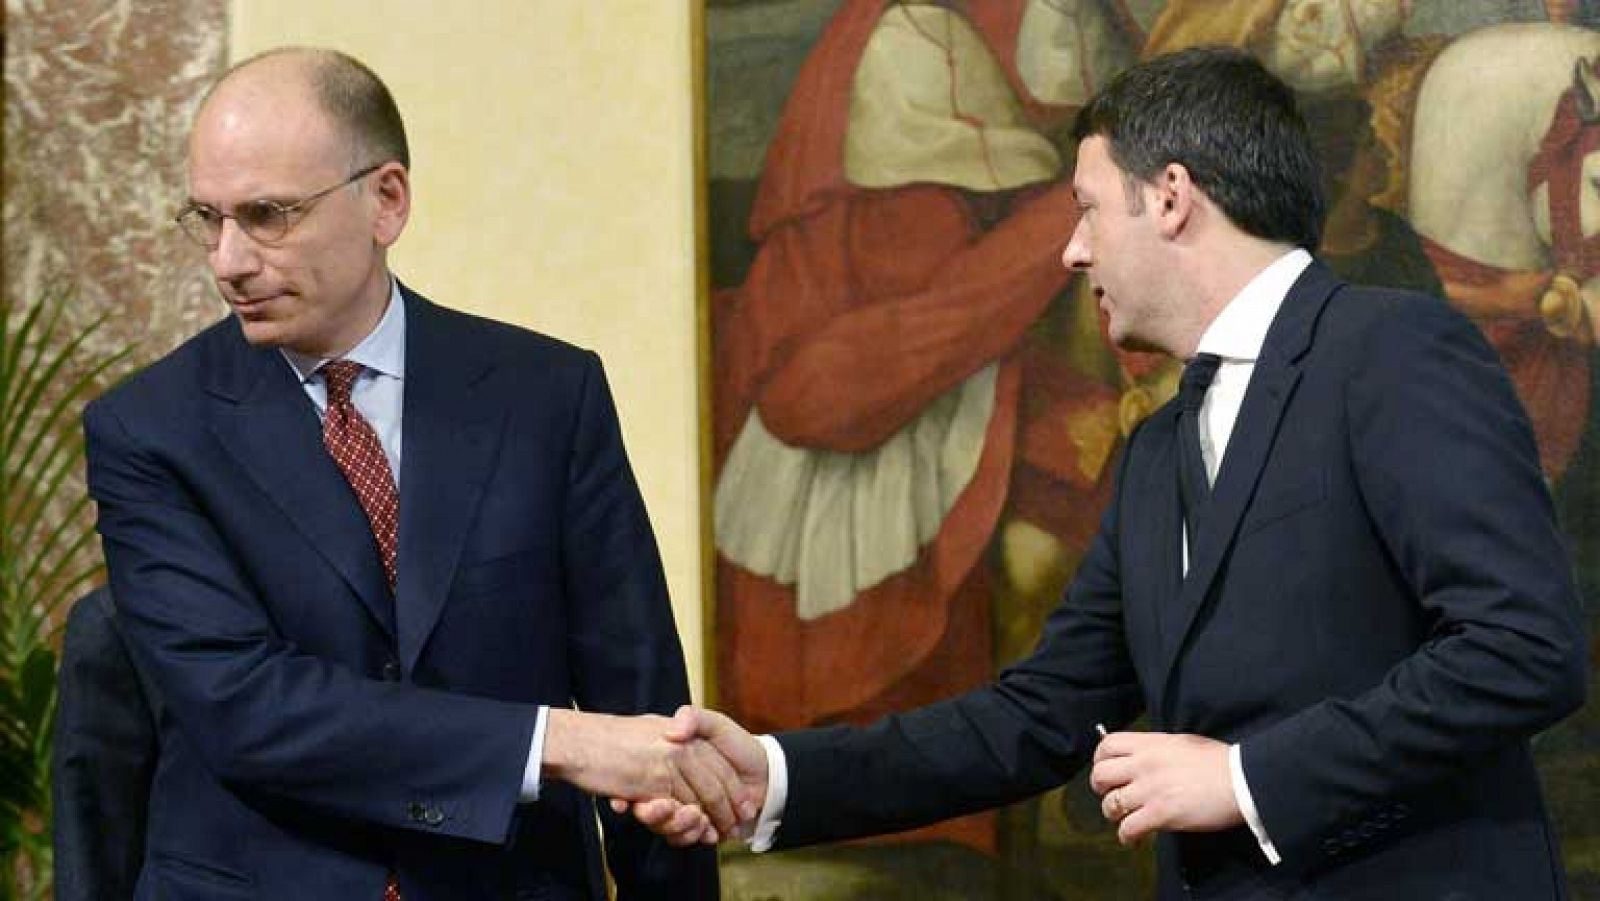 Los nuevos miembros del Gobierno de Italia juran sus cargos ante Giorgio Napolitano